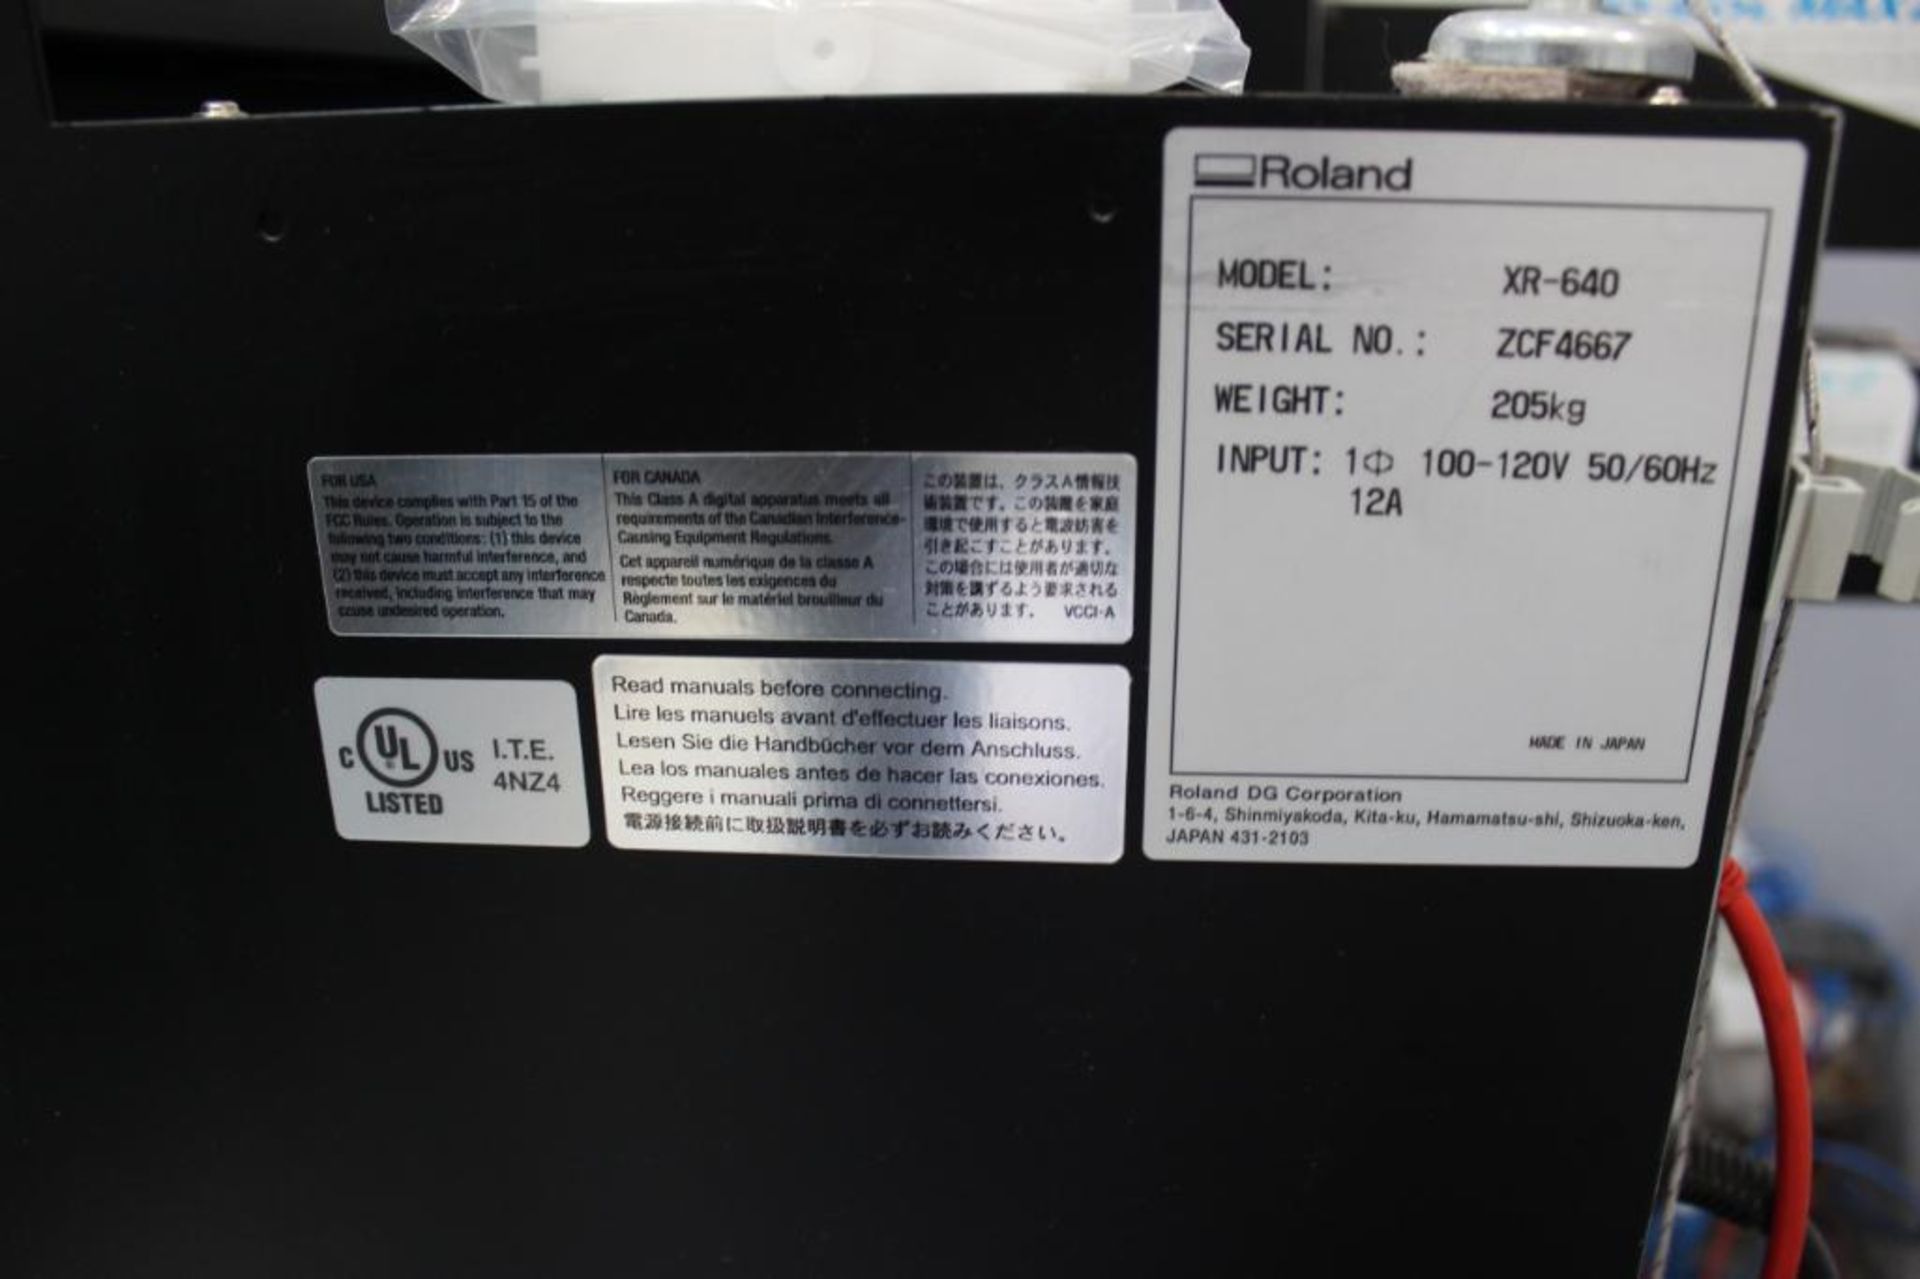 Roland SolJet Pro4 XR-640 Wide Format Printer s/n ZCF4667 - Image 8 of 9